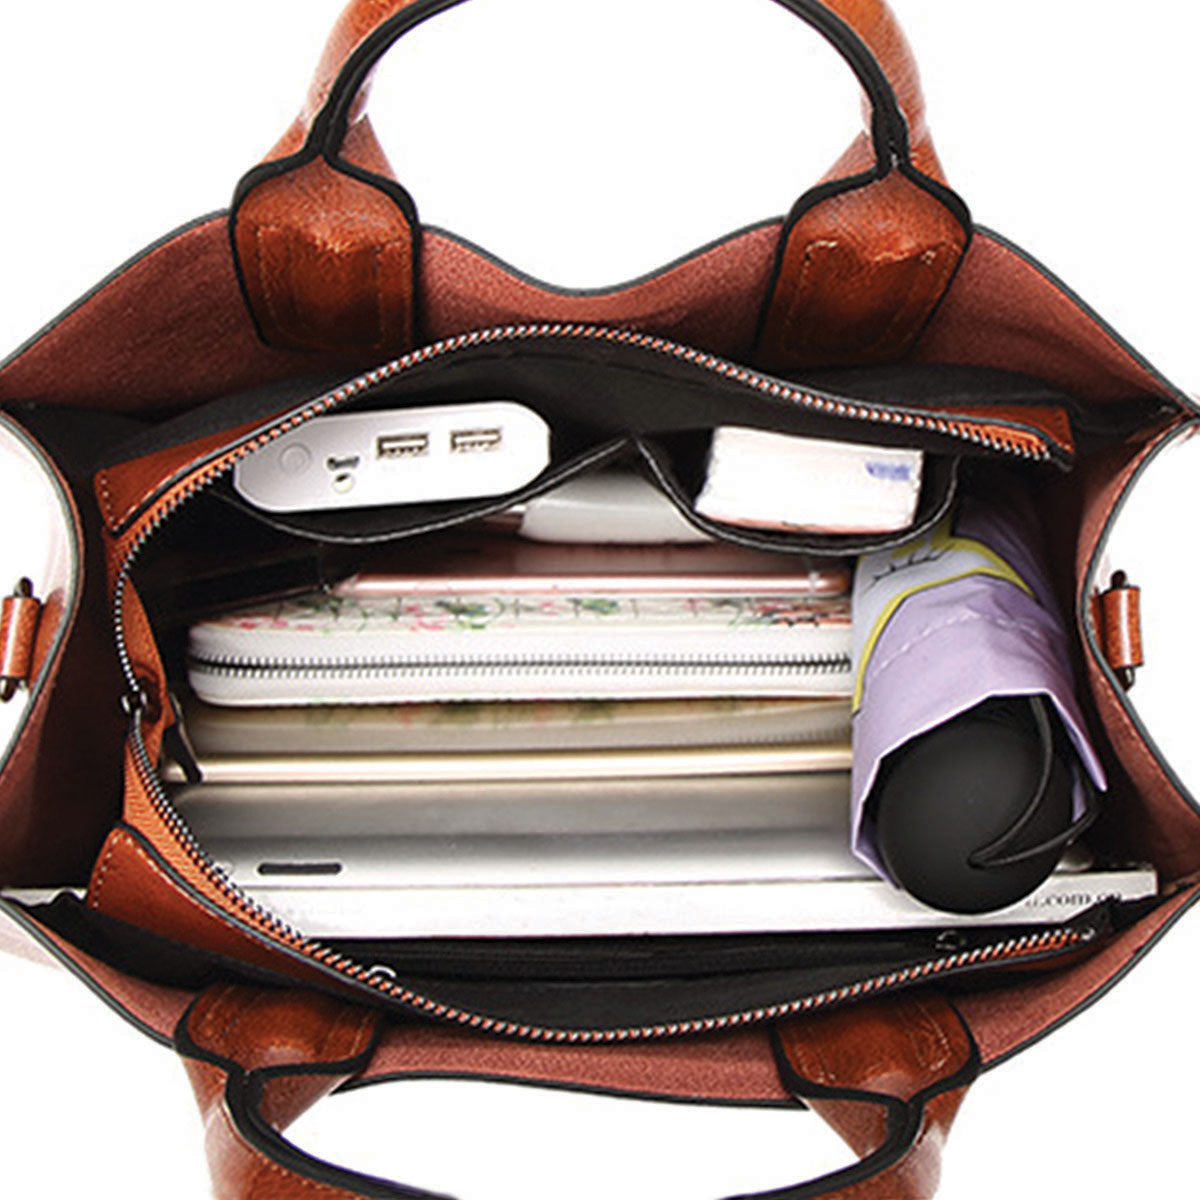 Ihr bester Begleiter – Zwergpinscher Luxus-Handtasche V1